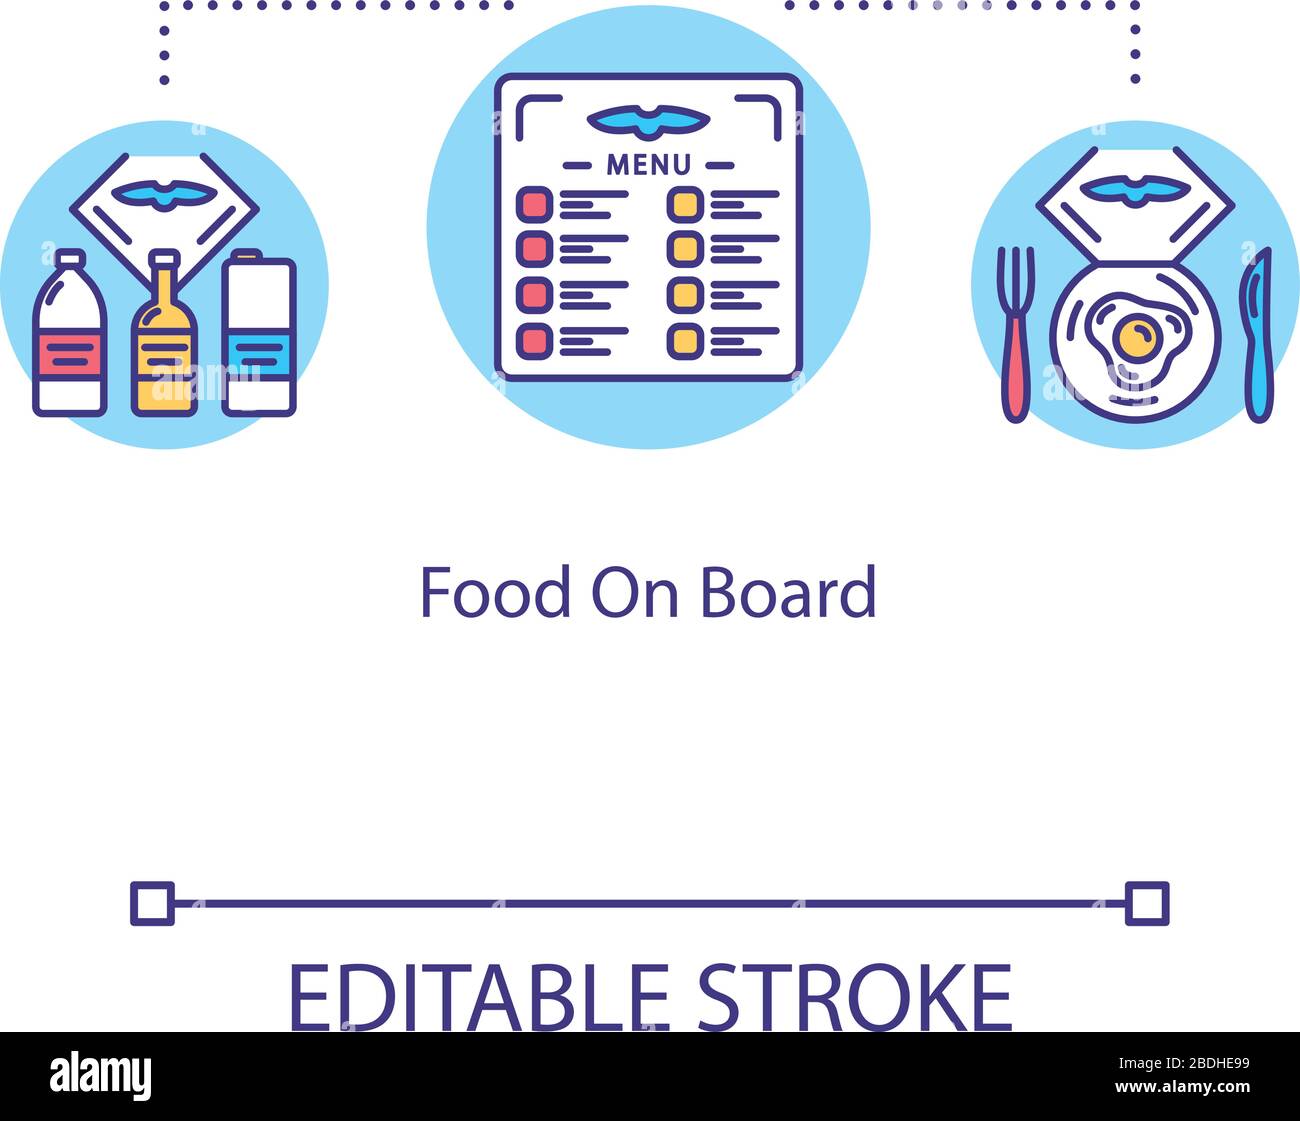 Symbol für das Konzept "Essen an Bord". Flugzeugernährung, Airline-Service-Idee Thin Line Illustration. Menü für Mahlzeiten und Getränke für Passagiere. Vektor Stock Vektor